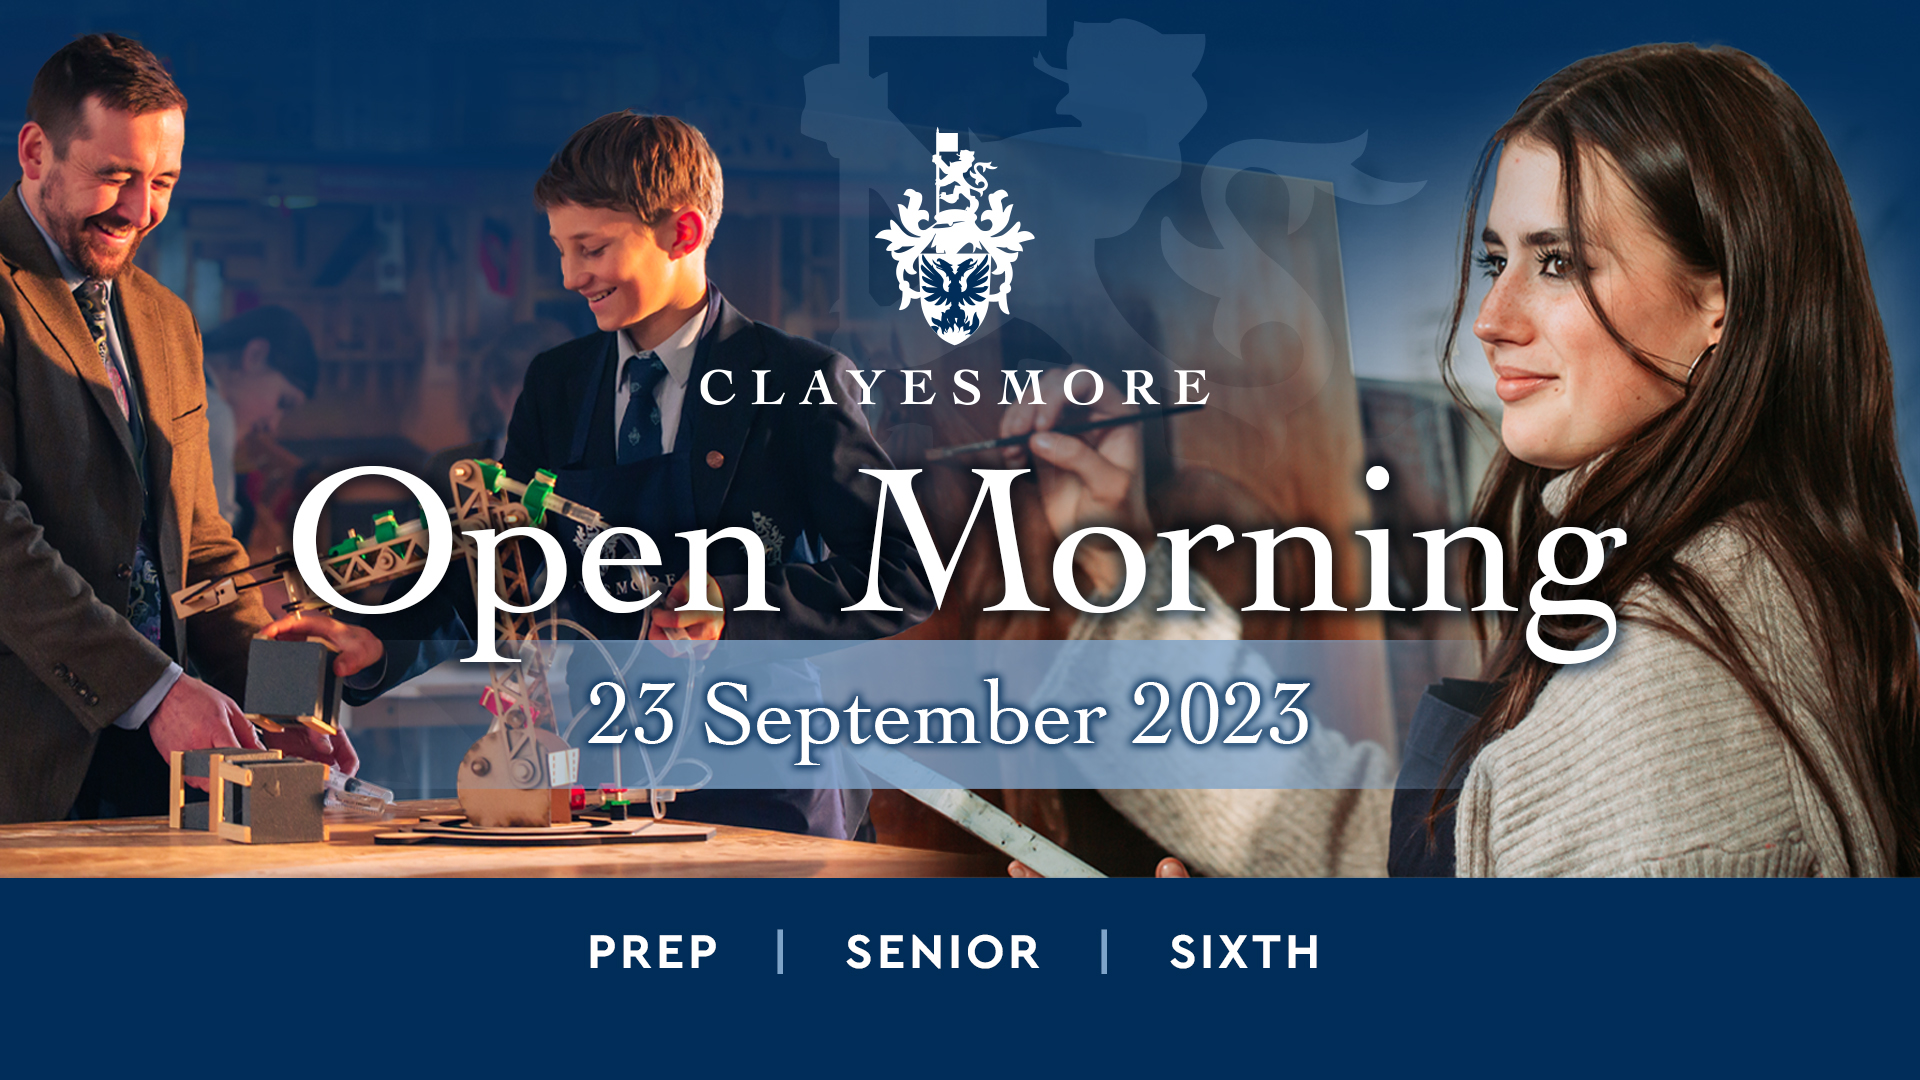 Open Morning Saturday 23 September